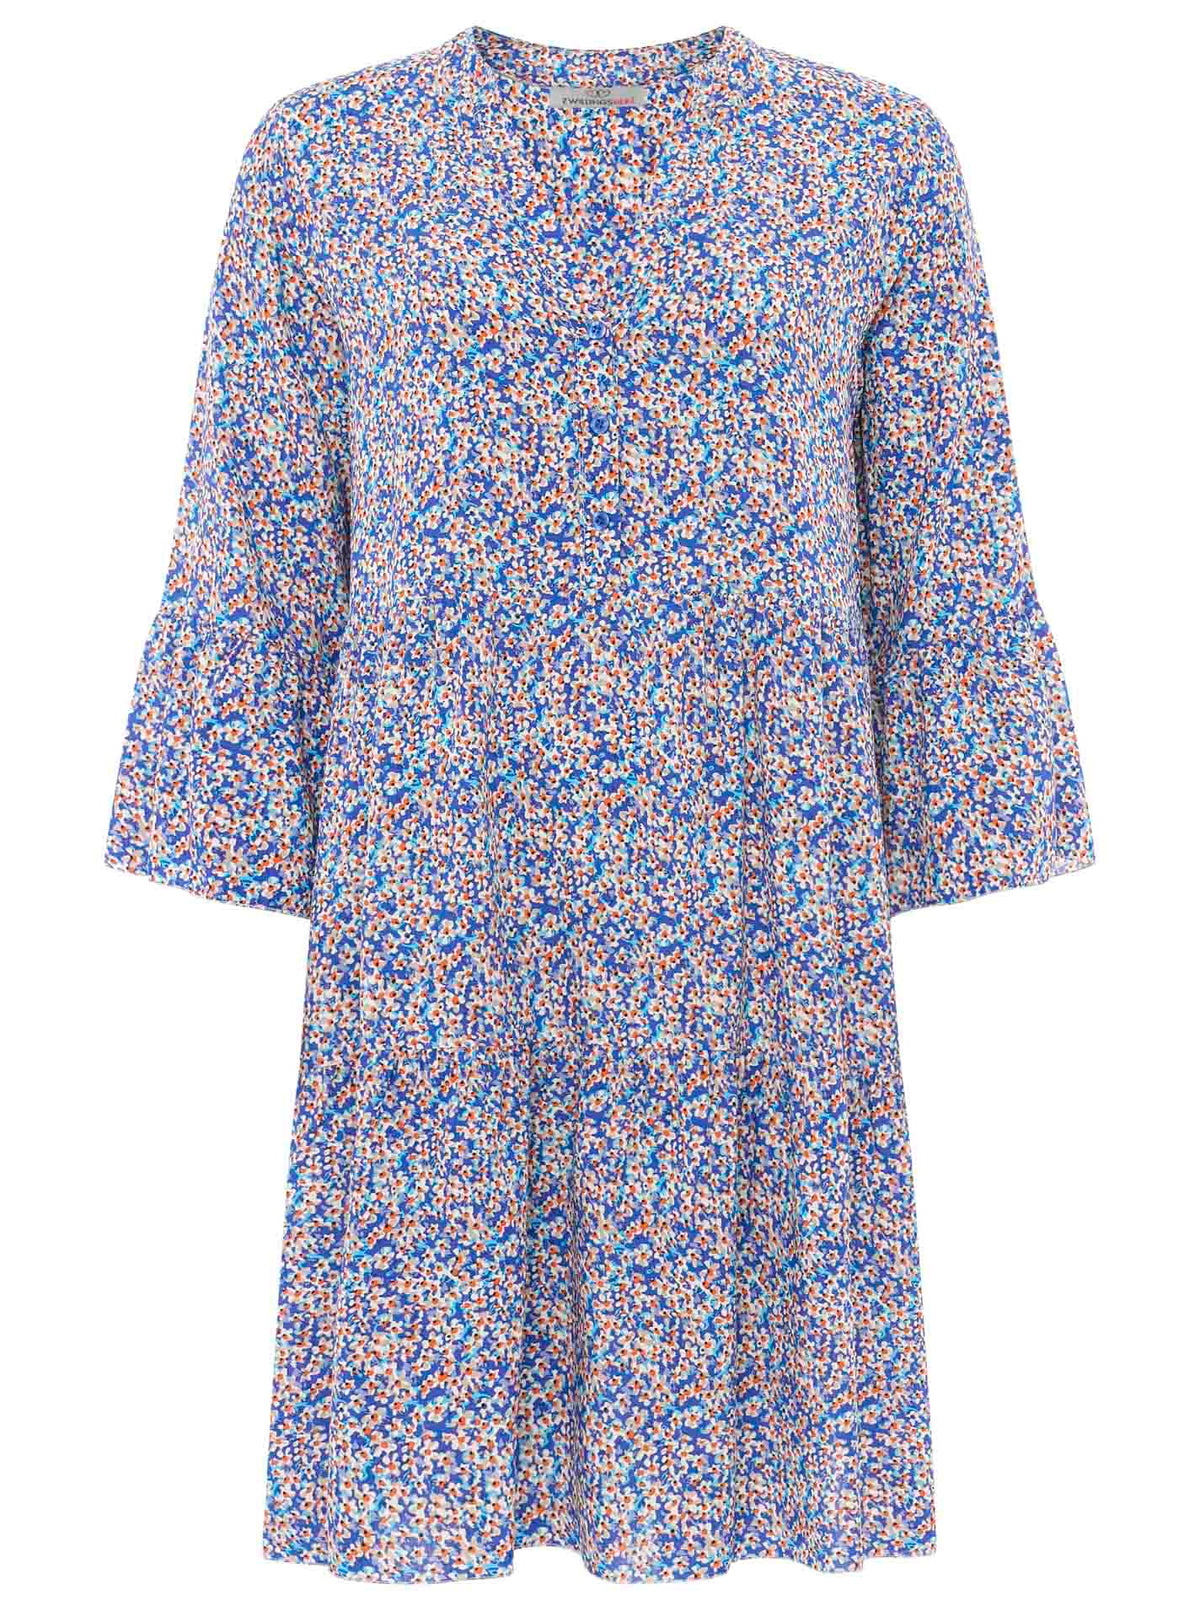 Zwillingsherz - Kleid/Tunika mit kleinen Blütenmuster - Blau